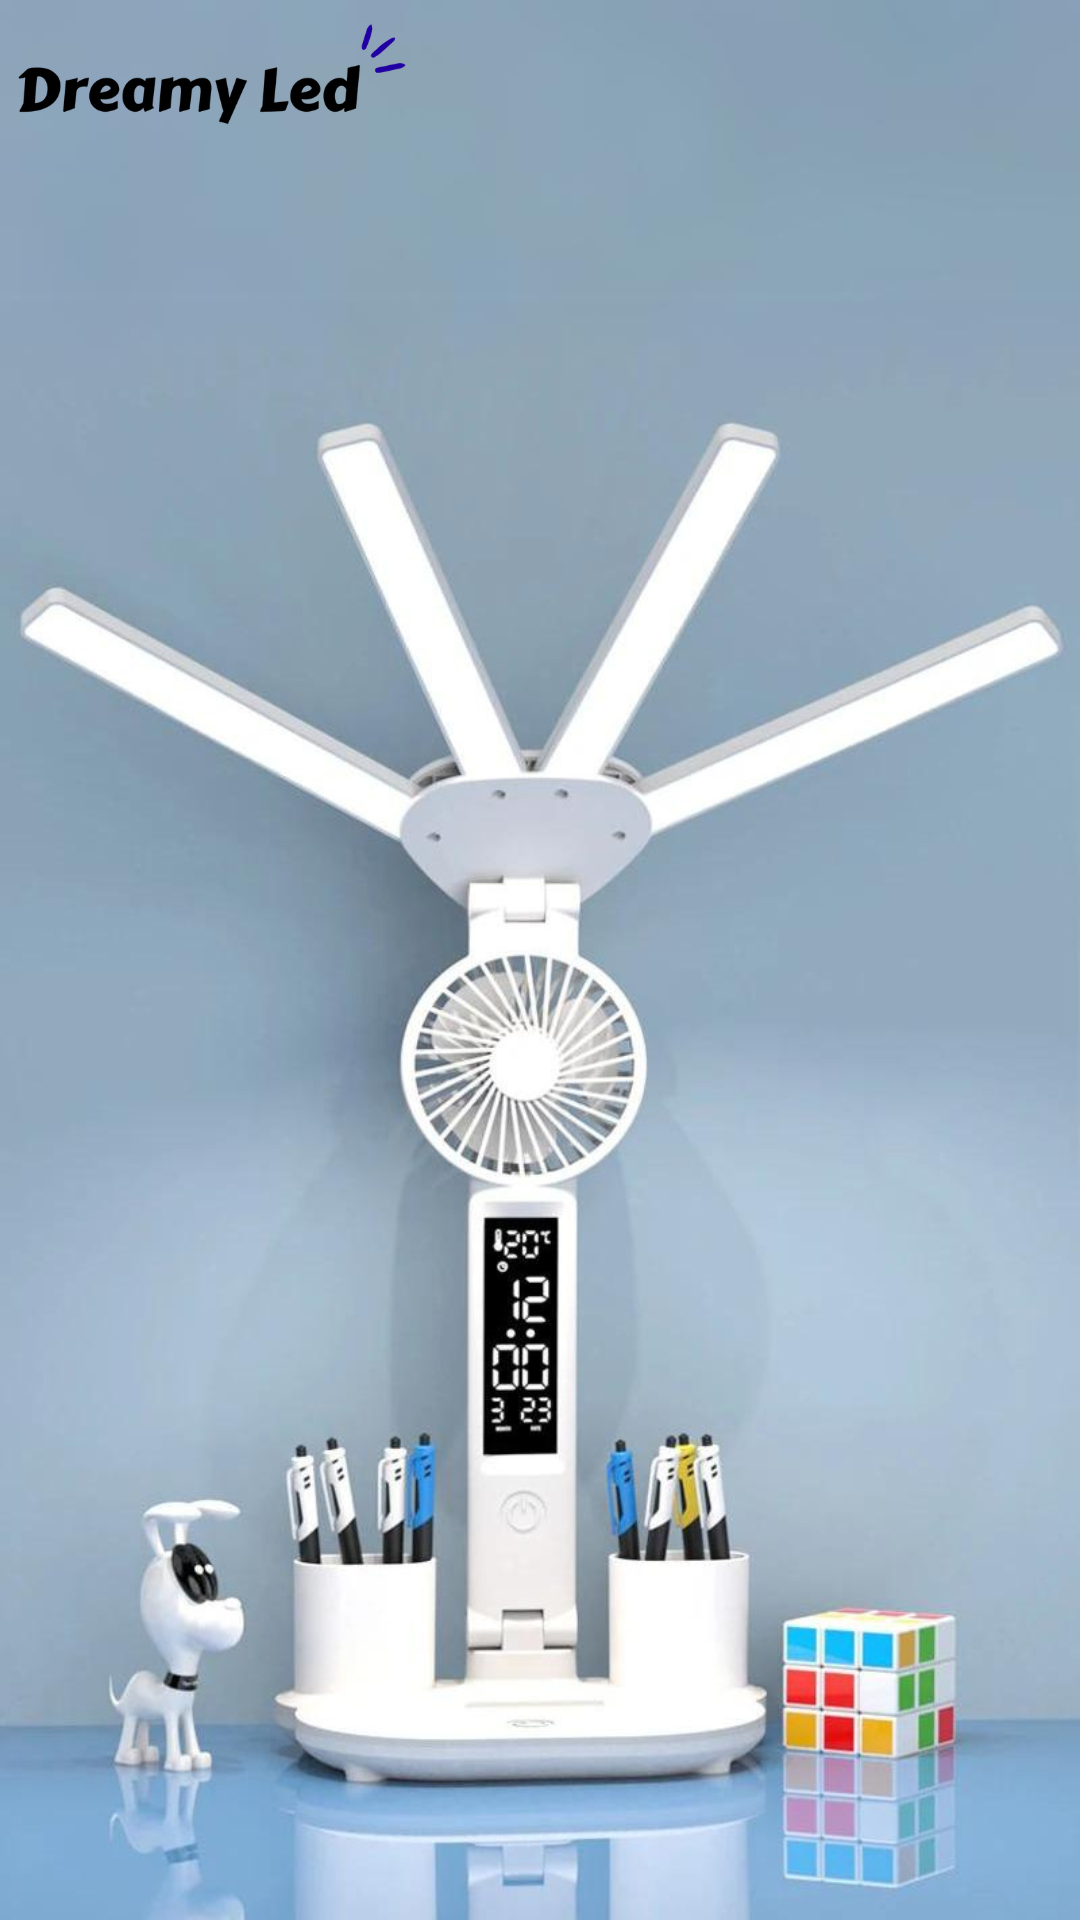 MultiGlow™ 3 in 1 Four-Headed LED Desk Lamp - Dreamy Led